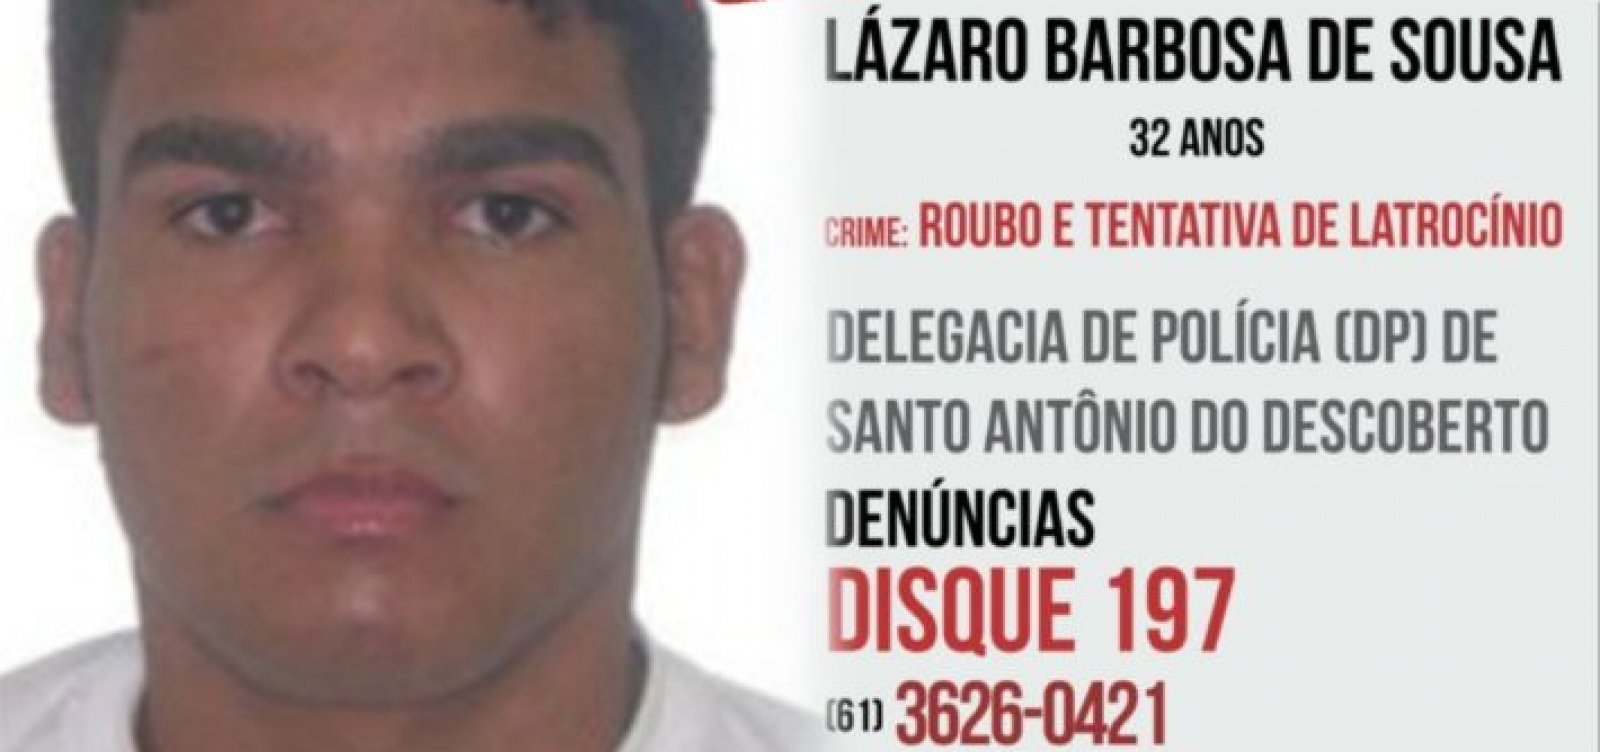 Para chefe da força-tarefa, Lázaro repete padrão de fuga feita há 13 anos em Barra do Mendes